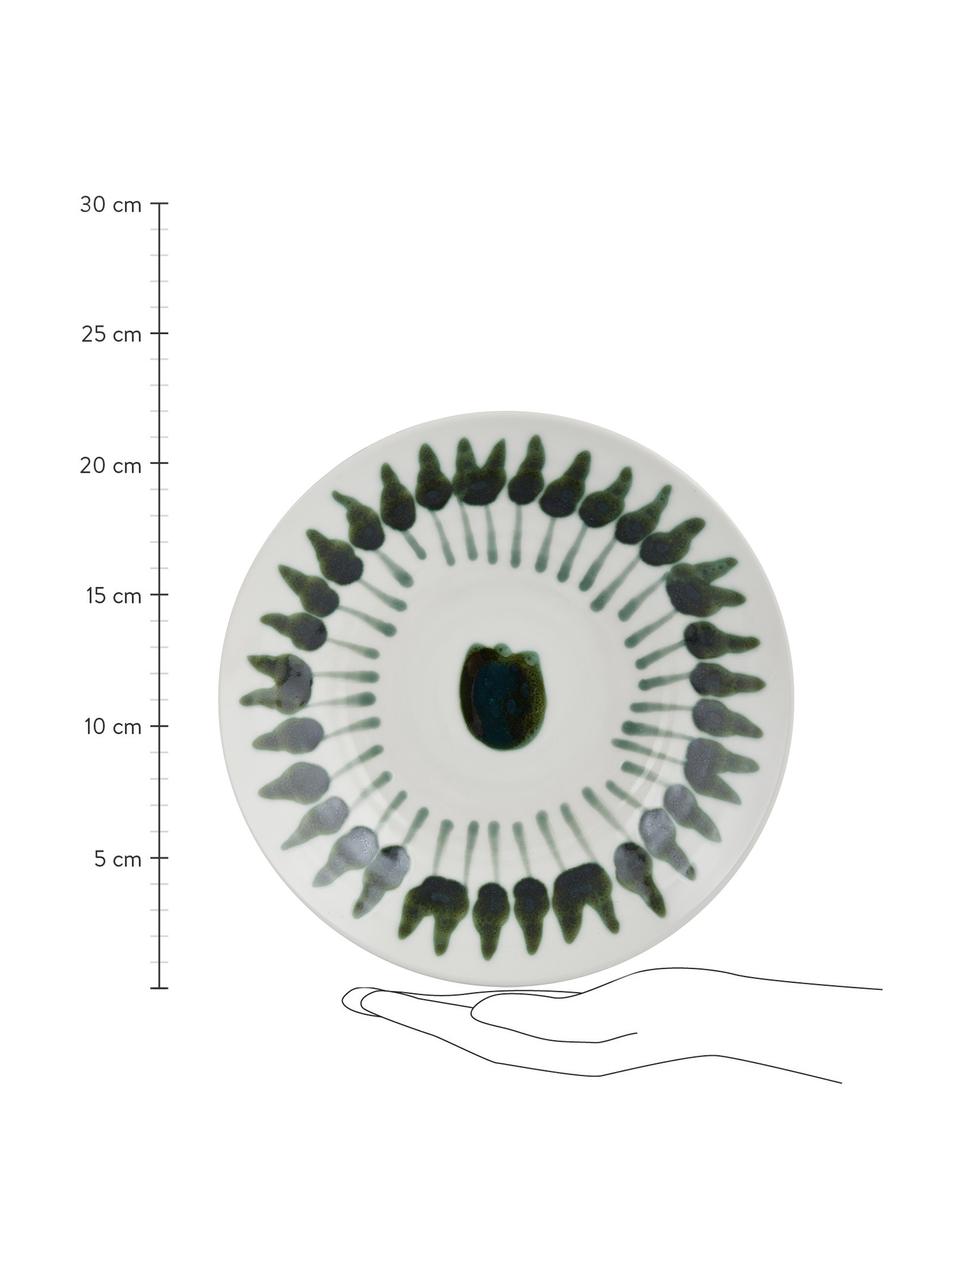 Handbemalter Suppenteller Sparks mit Pinselstrich-Dekor, Steingut, Weiß, Grün, Ø 22 cm